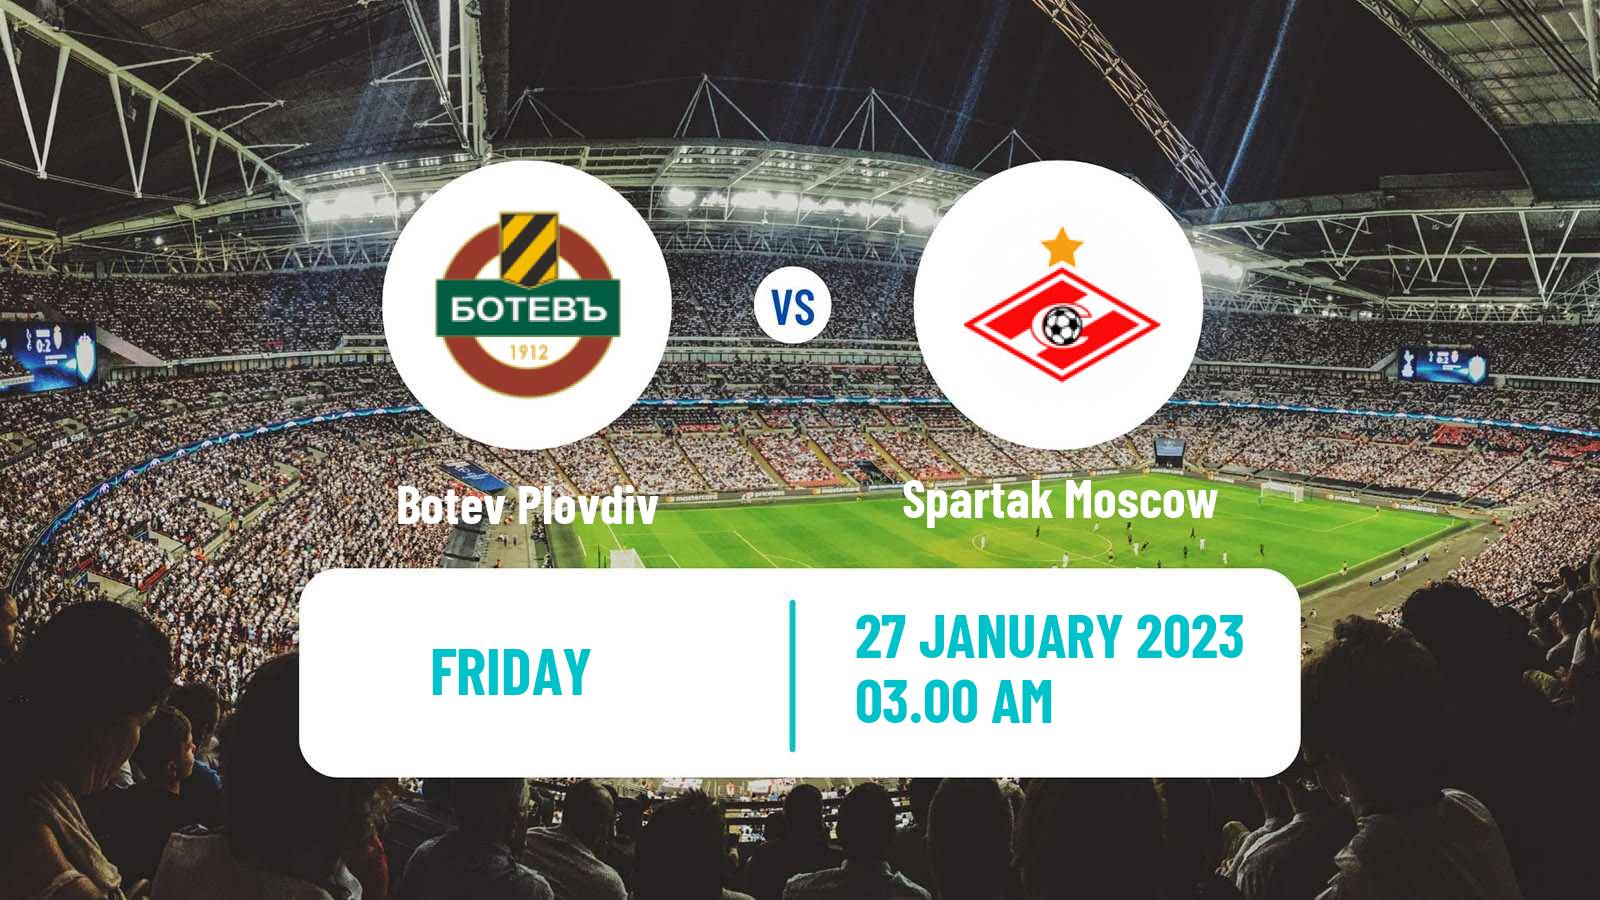 Soccer Club Friendly Botev Plovdiv - Spartak Moscow